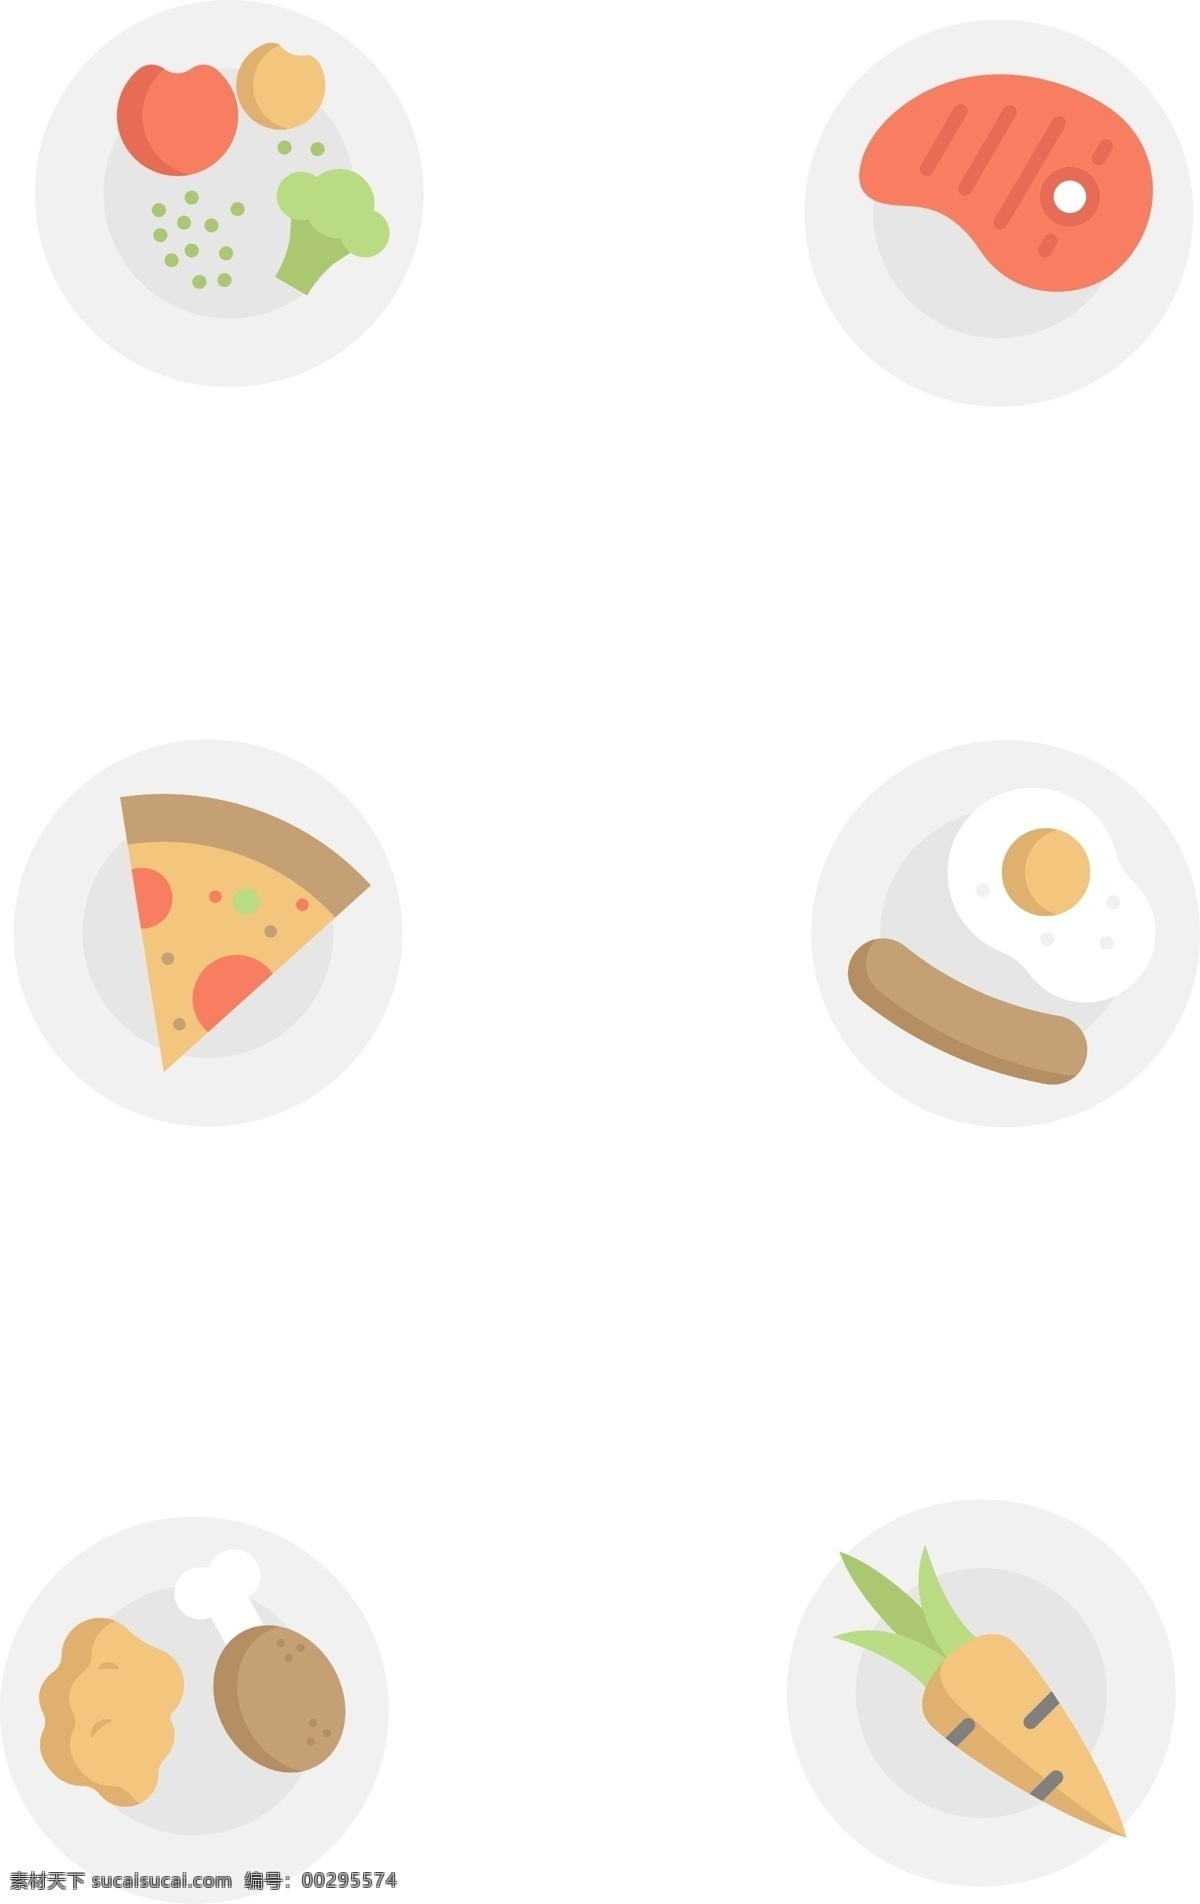 盘中 食物 相关 插画 图标 扁平化 拟物 食品 盘中餐 蔬菜 肉类 披萨 煎蛋火腿 有趣的 可爱的